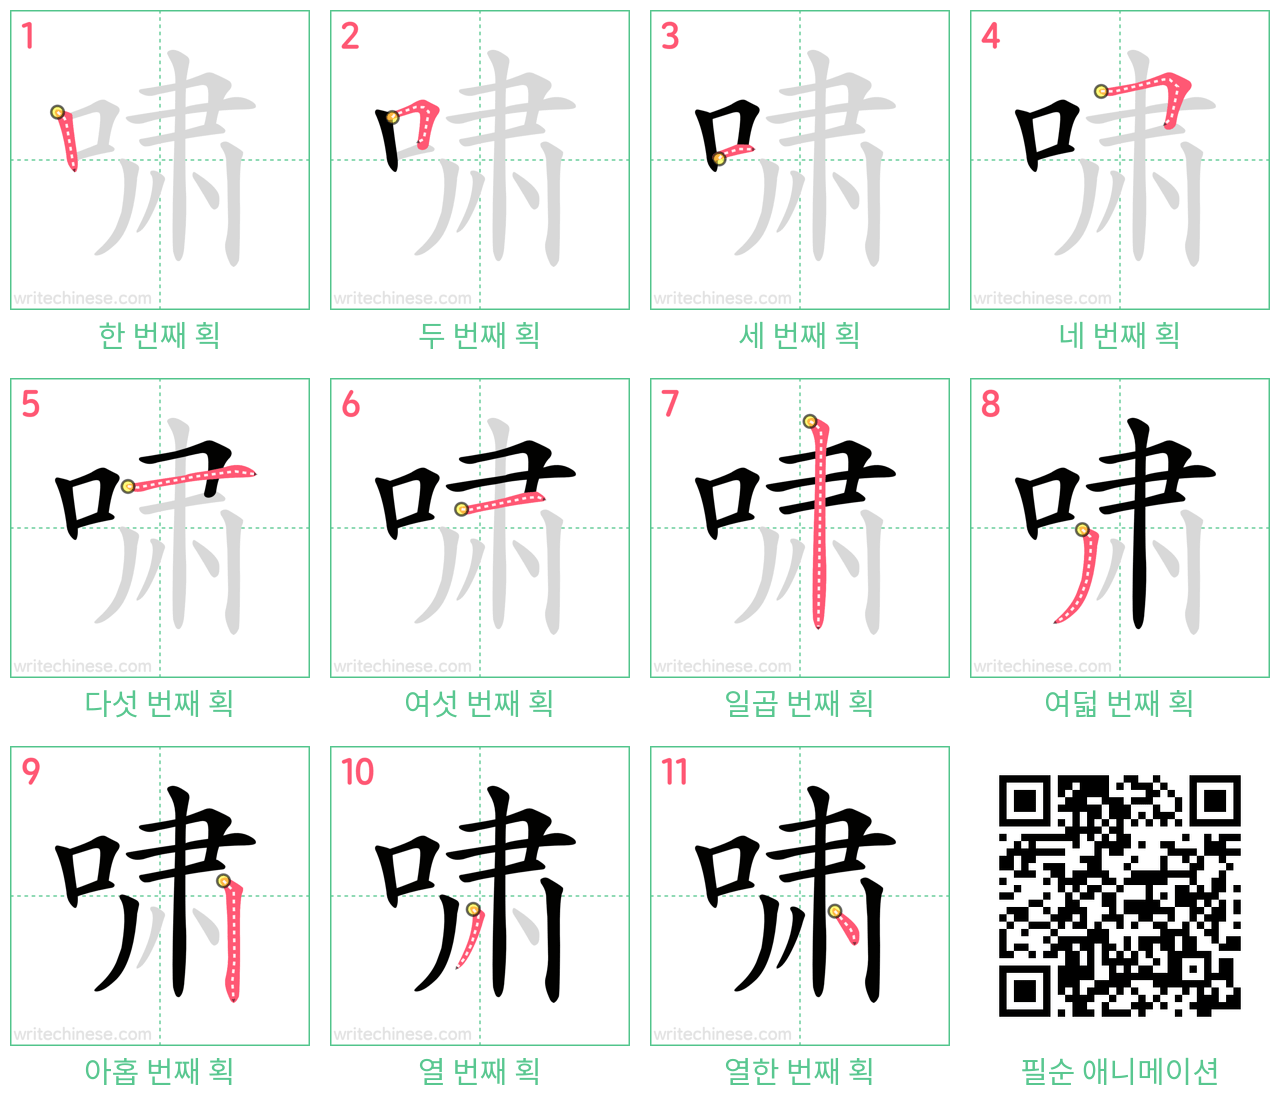 啸 step-by-step stroke order diagrams